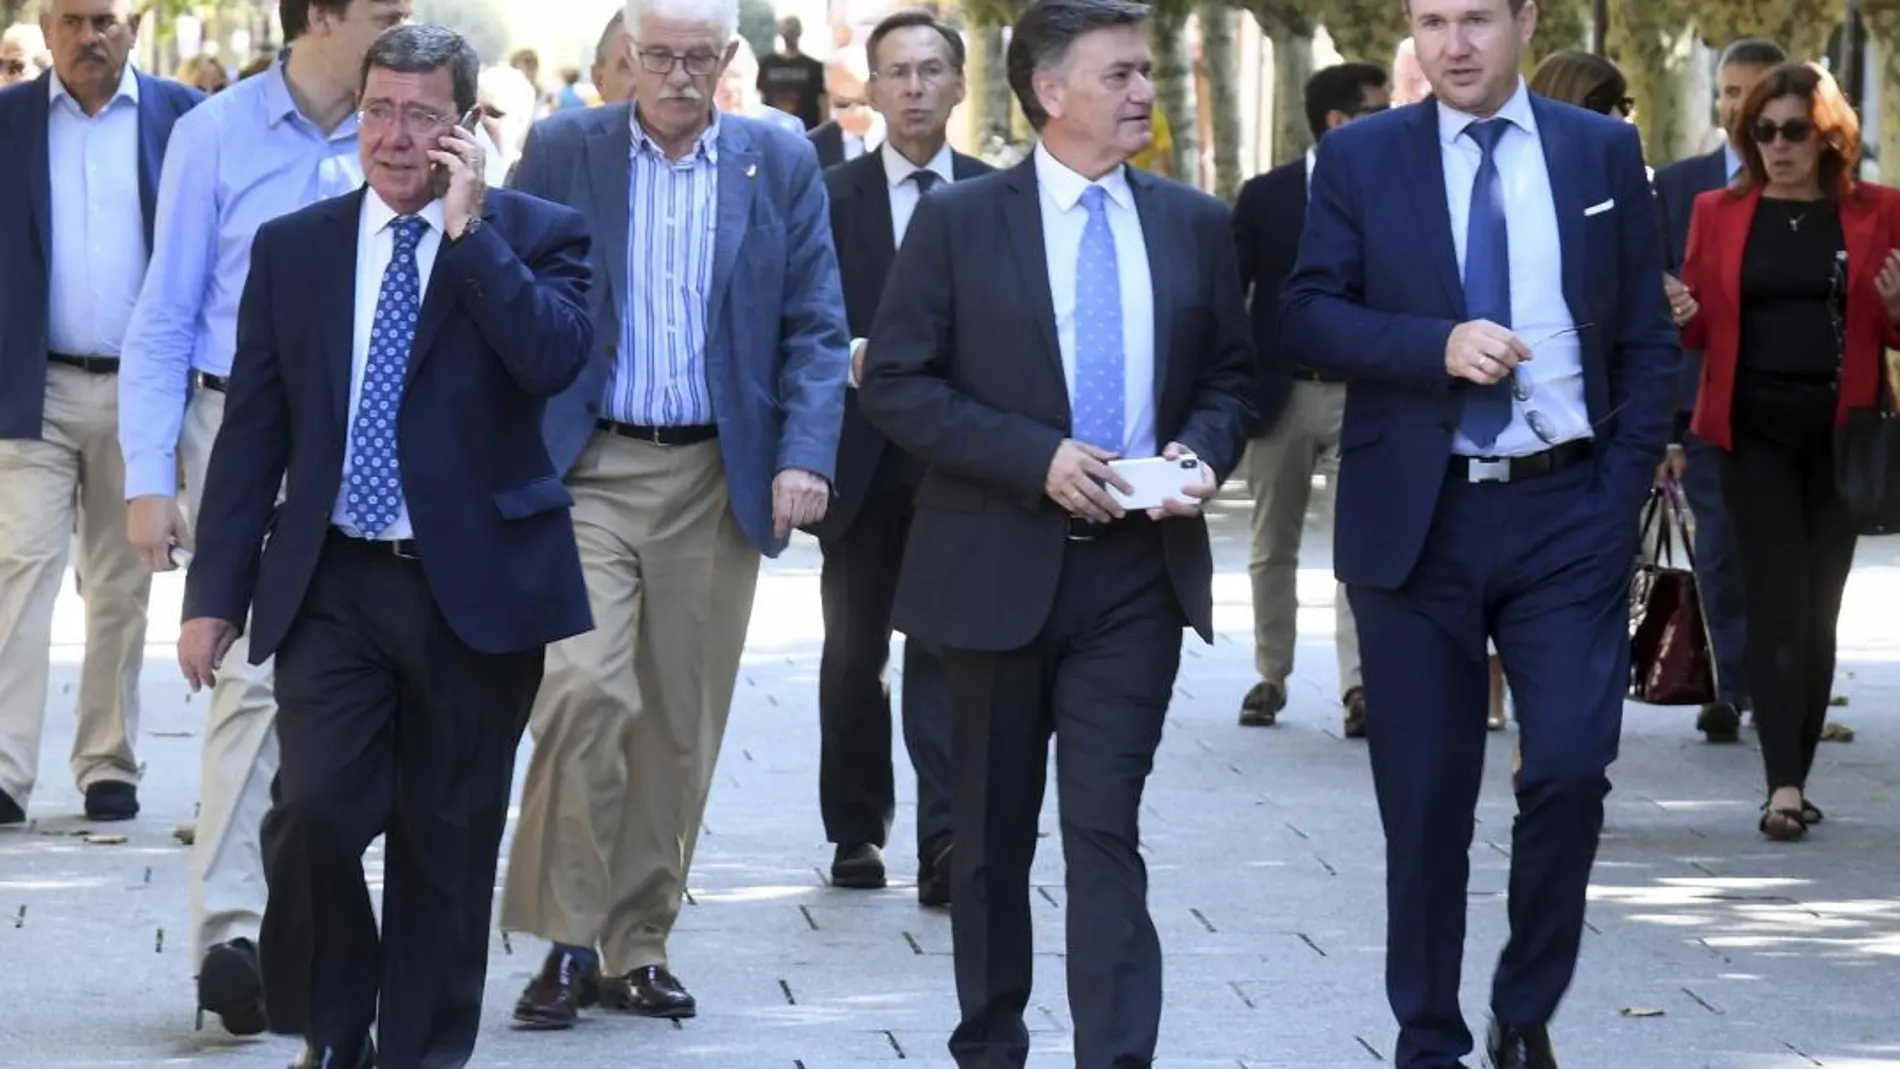 El alcalde de Burgos, Javier Lacalle; el presidente de la Diputación provincial, César Rico; y el secretario autonómico del PP en la Comunidad, Francisco Vázquez, se dirigen al encuentro